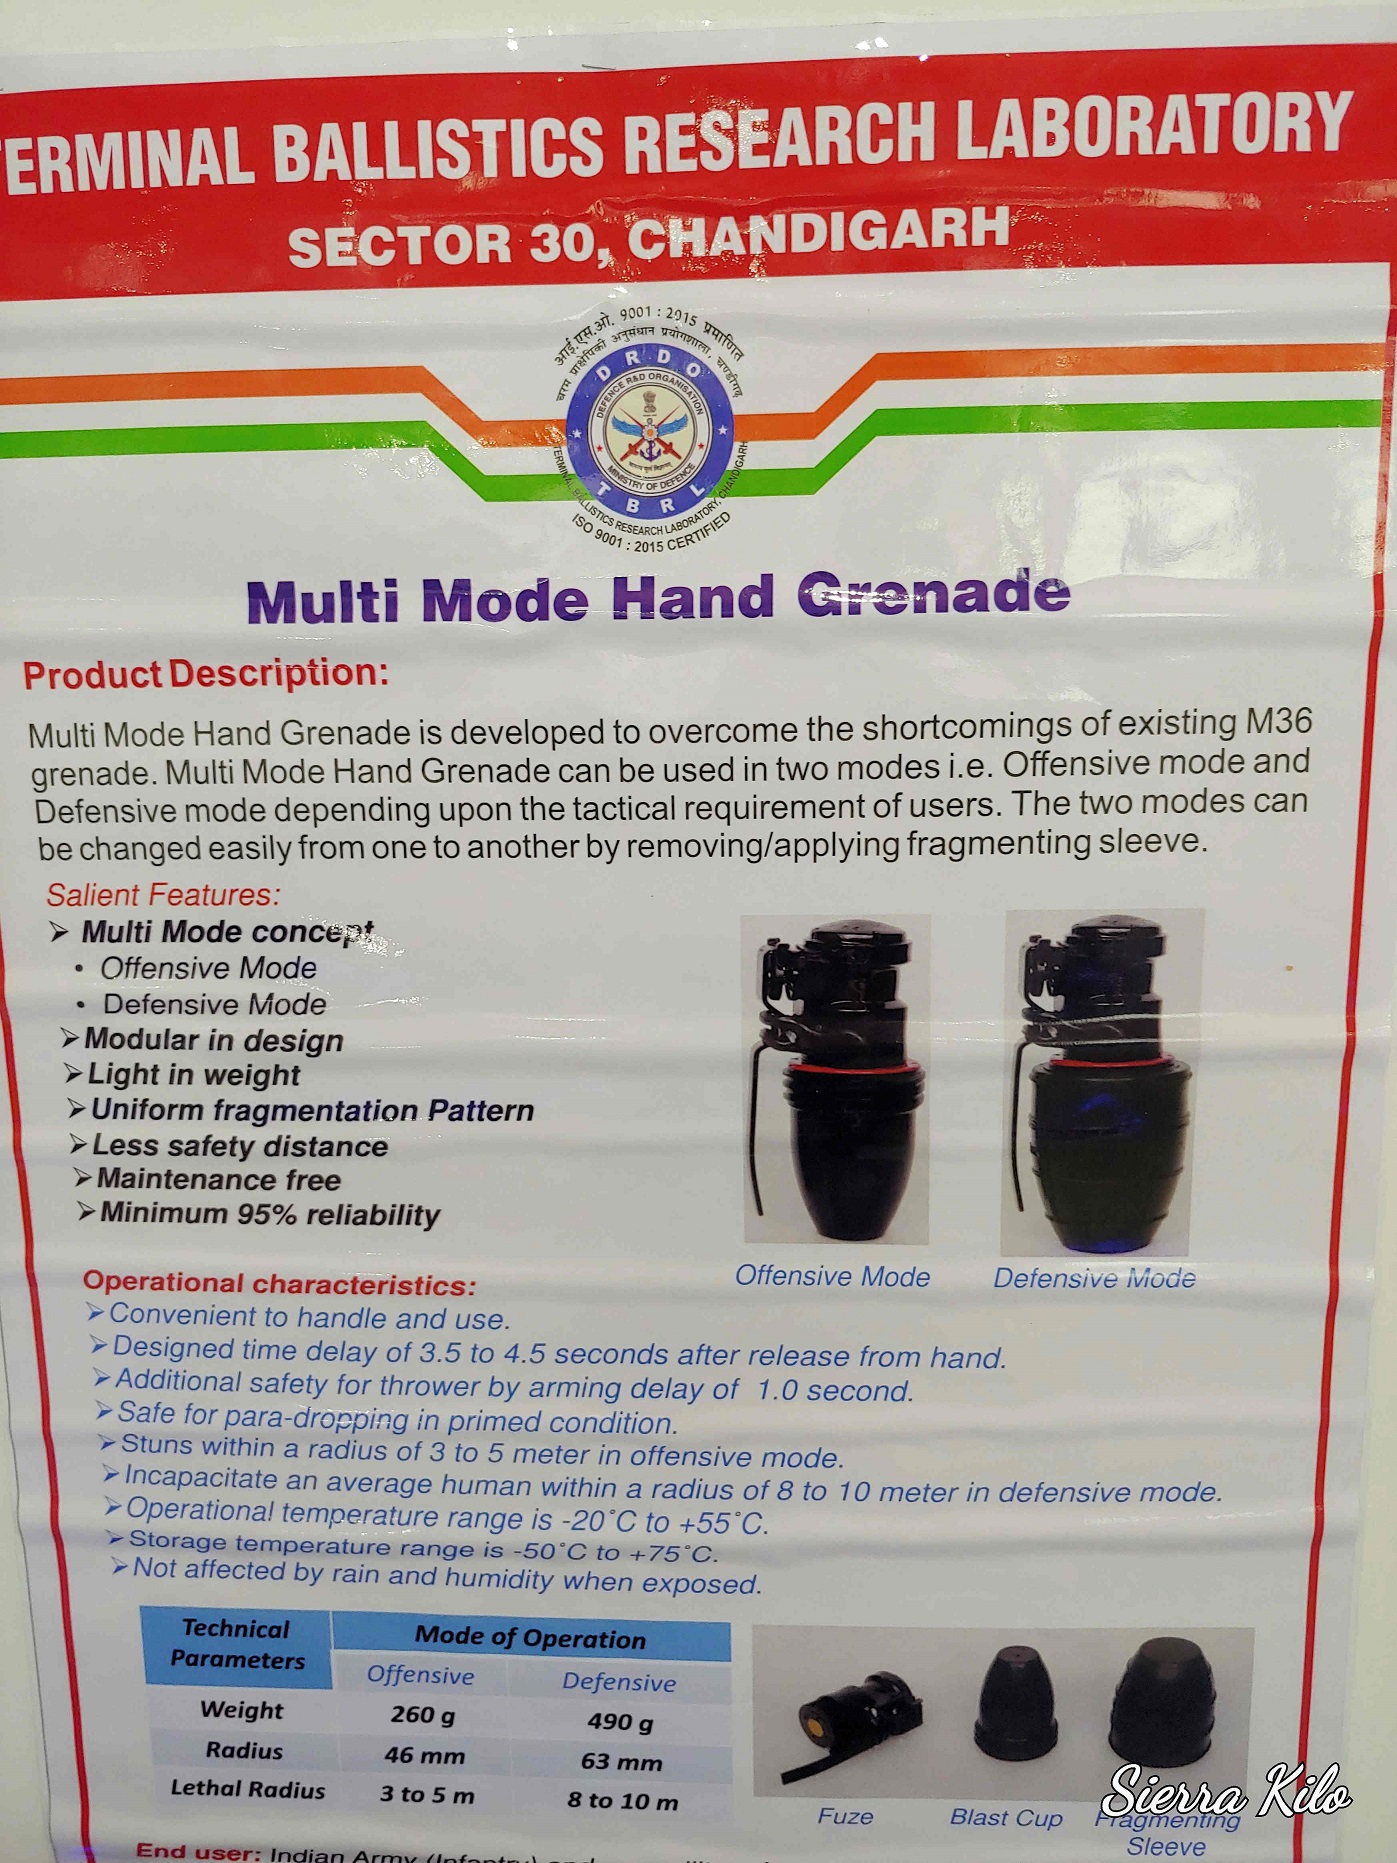 MultiMode Hand Grenade.jpg